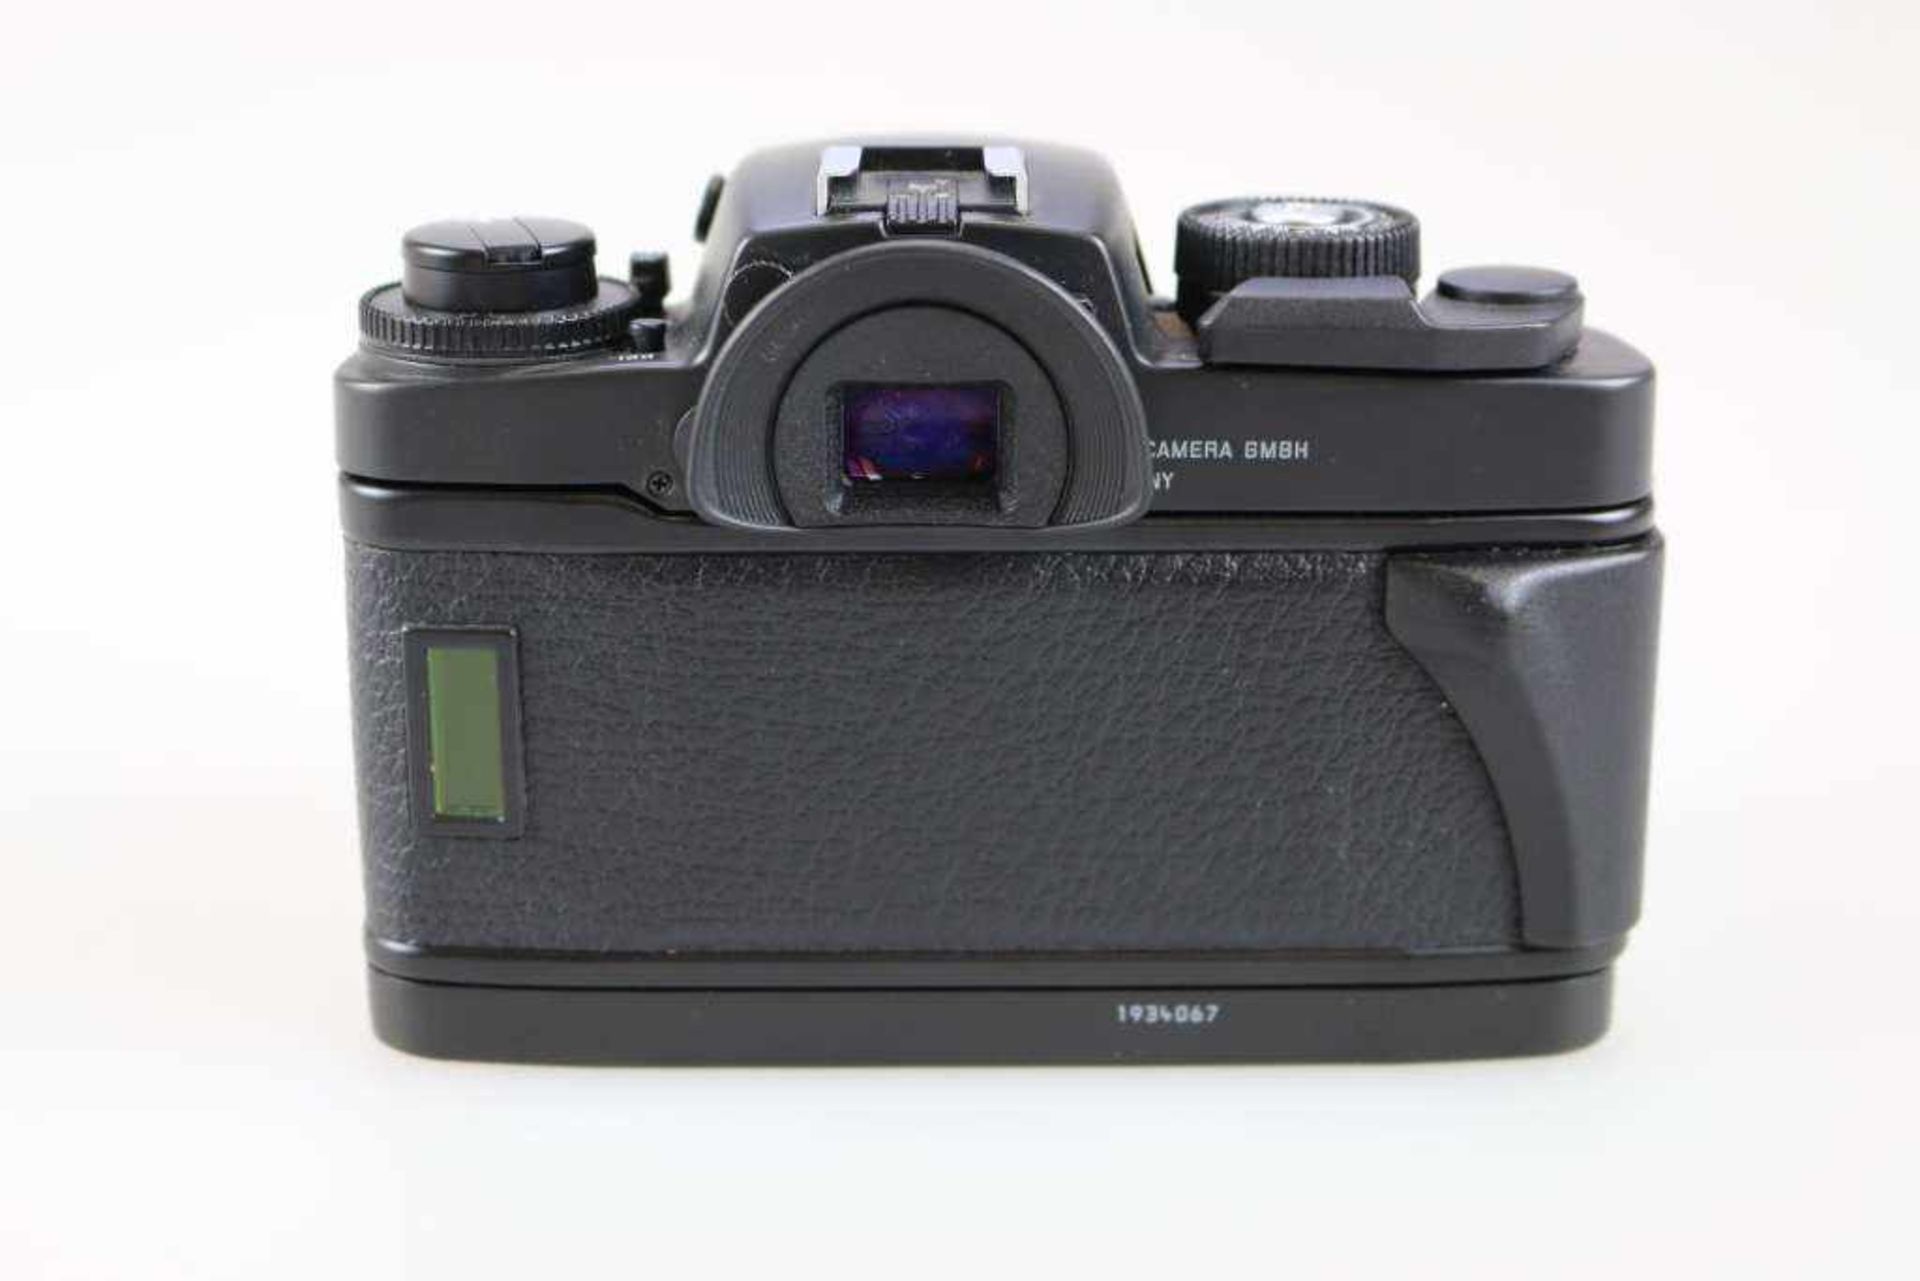 LEICA R7 (1992-1997), gut erhaltenes Gehäuse Leica R7 in schwarz, Seriennummer: 1934067. - Bild 2 aus 3